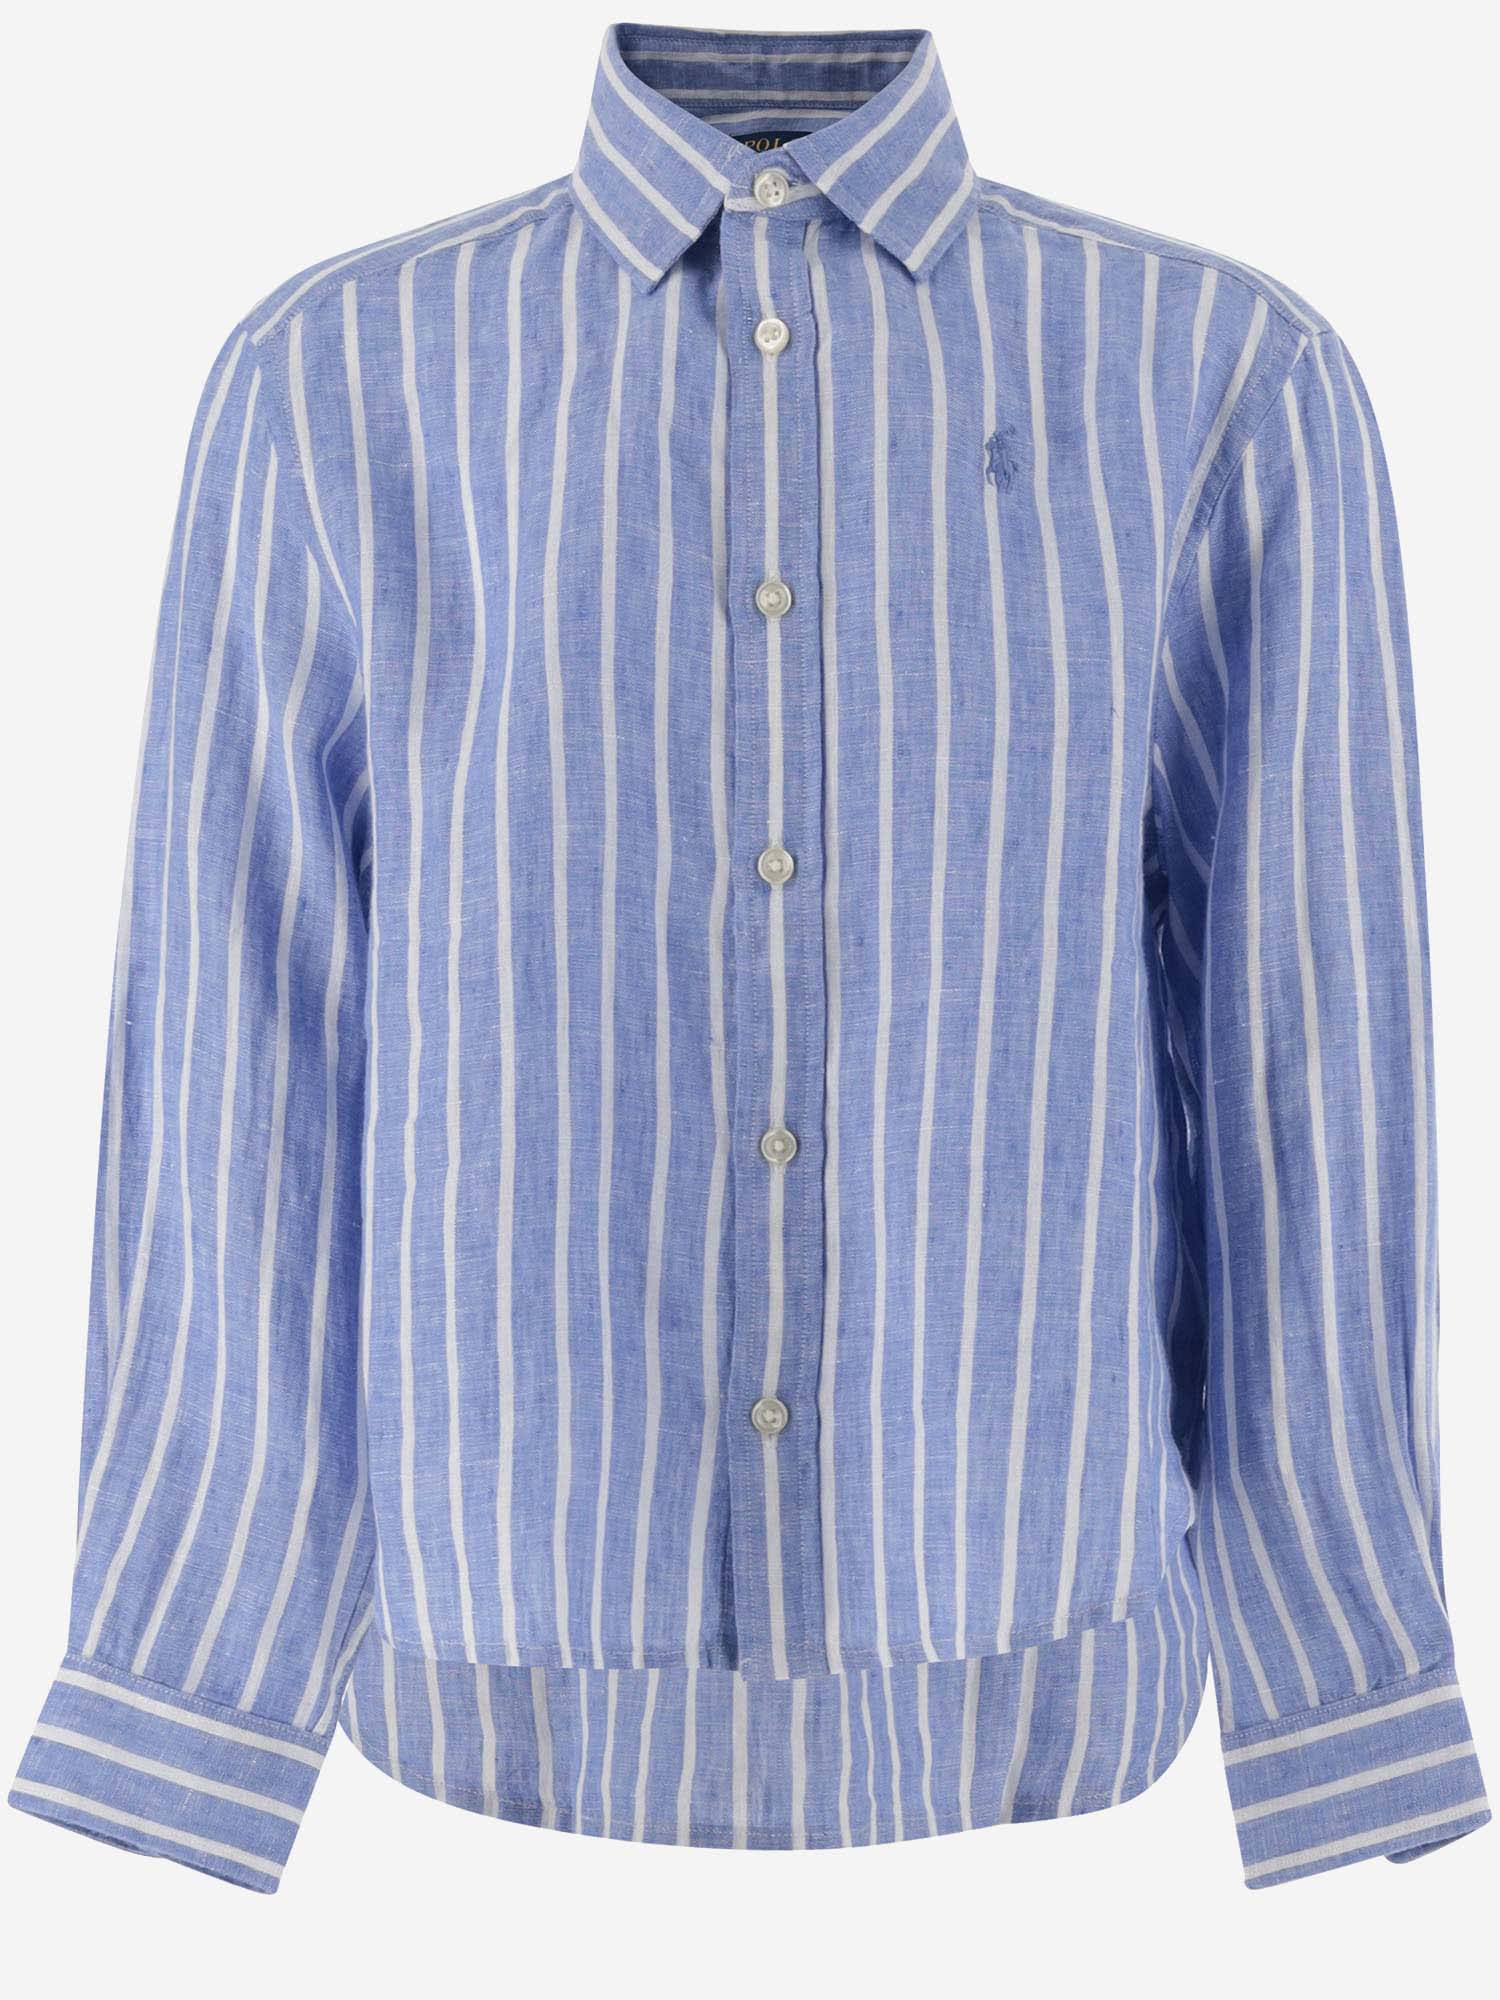 Ralph Lauren Kids' Striped Linen Shirt With Logo In Blue